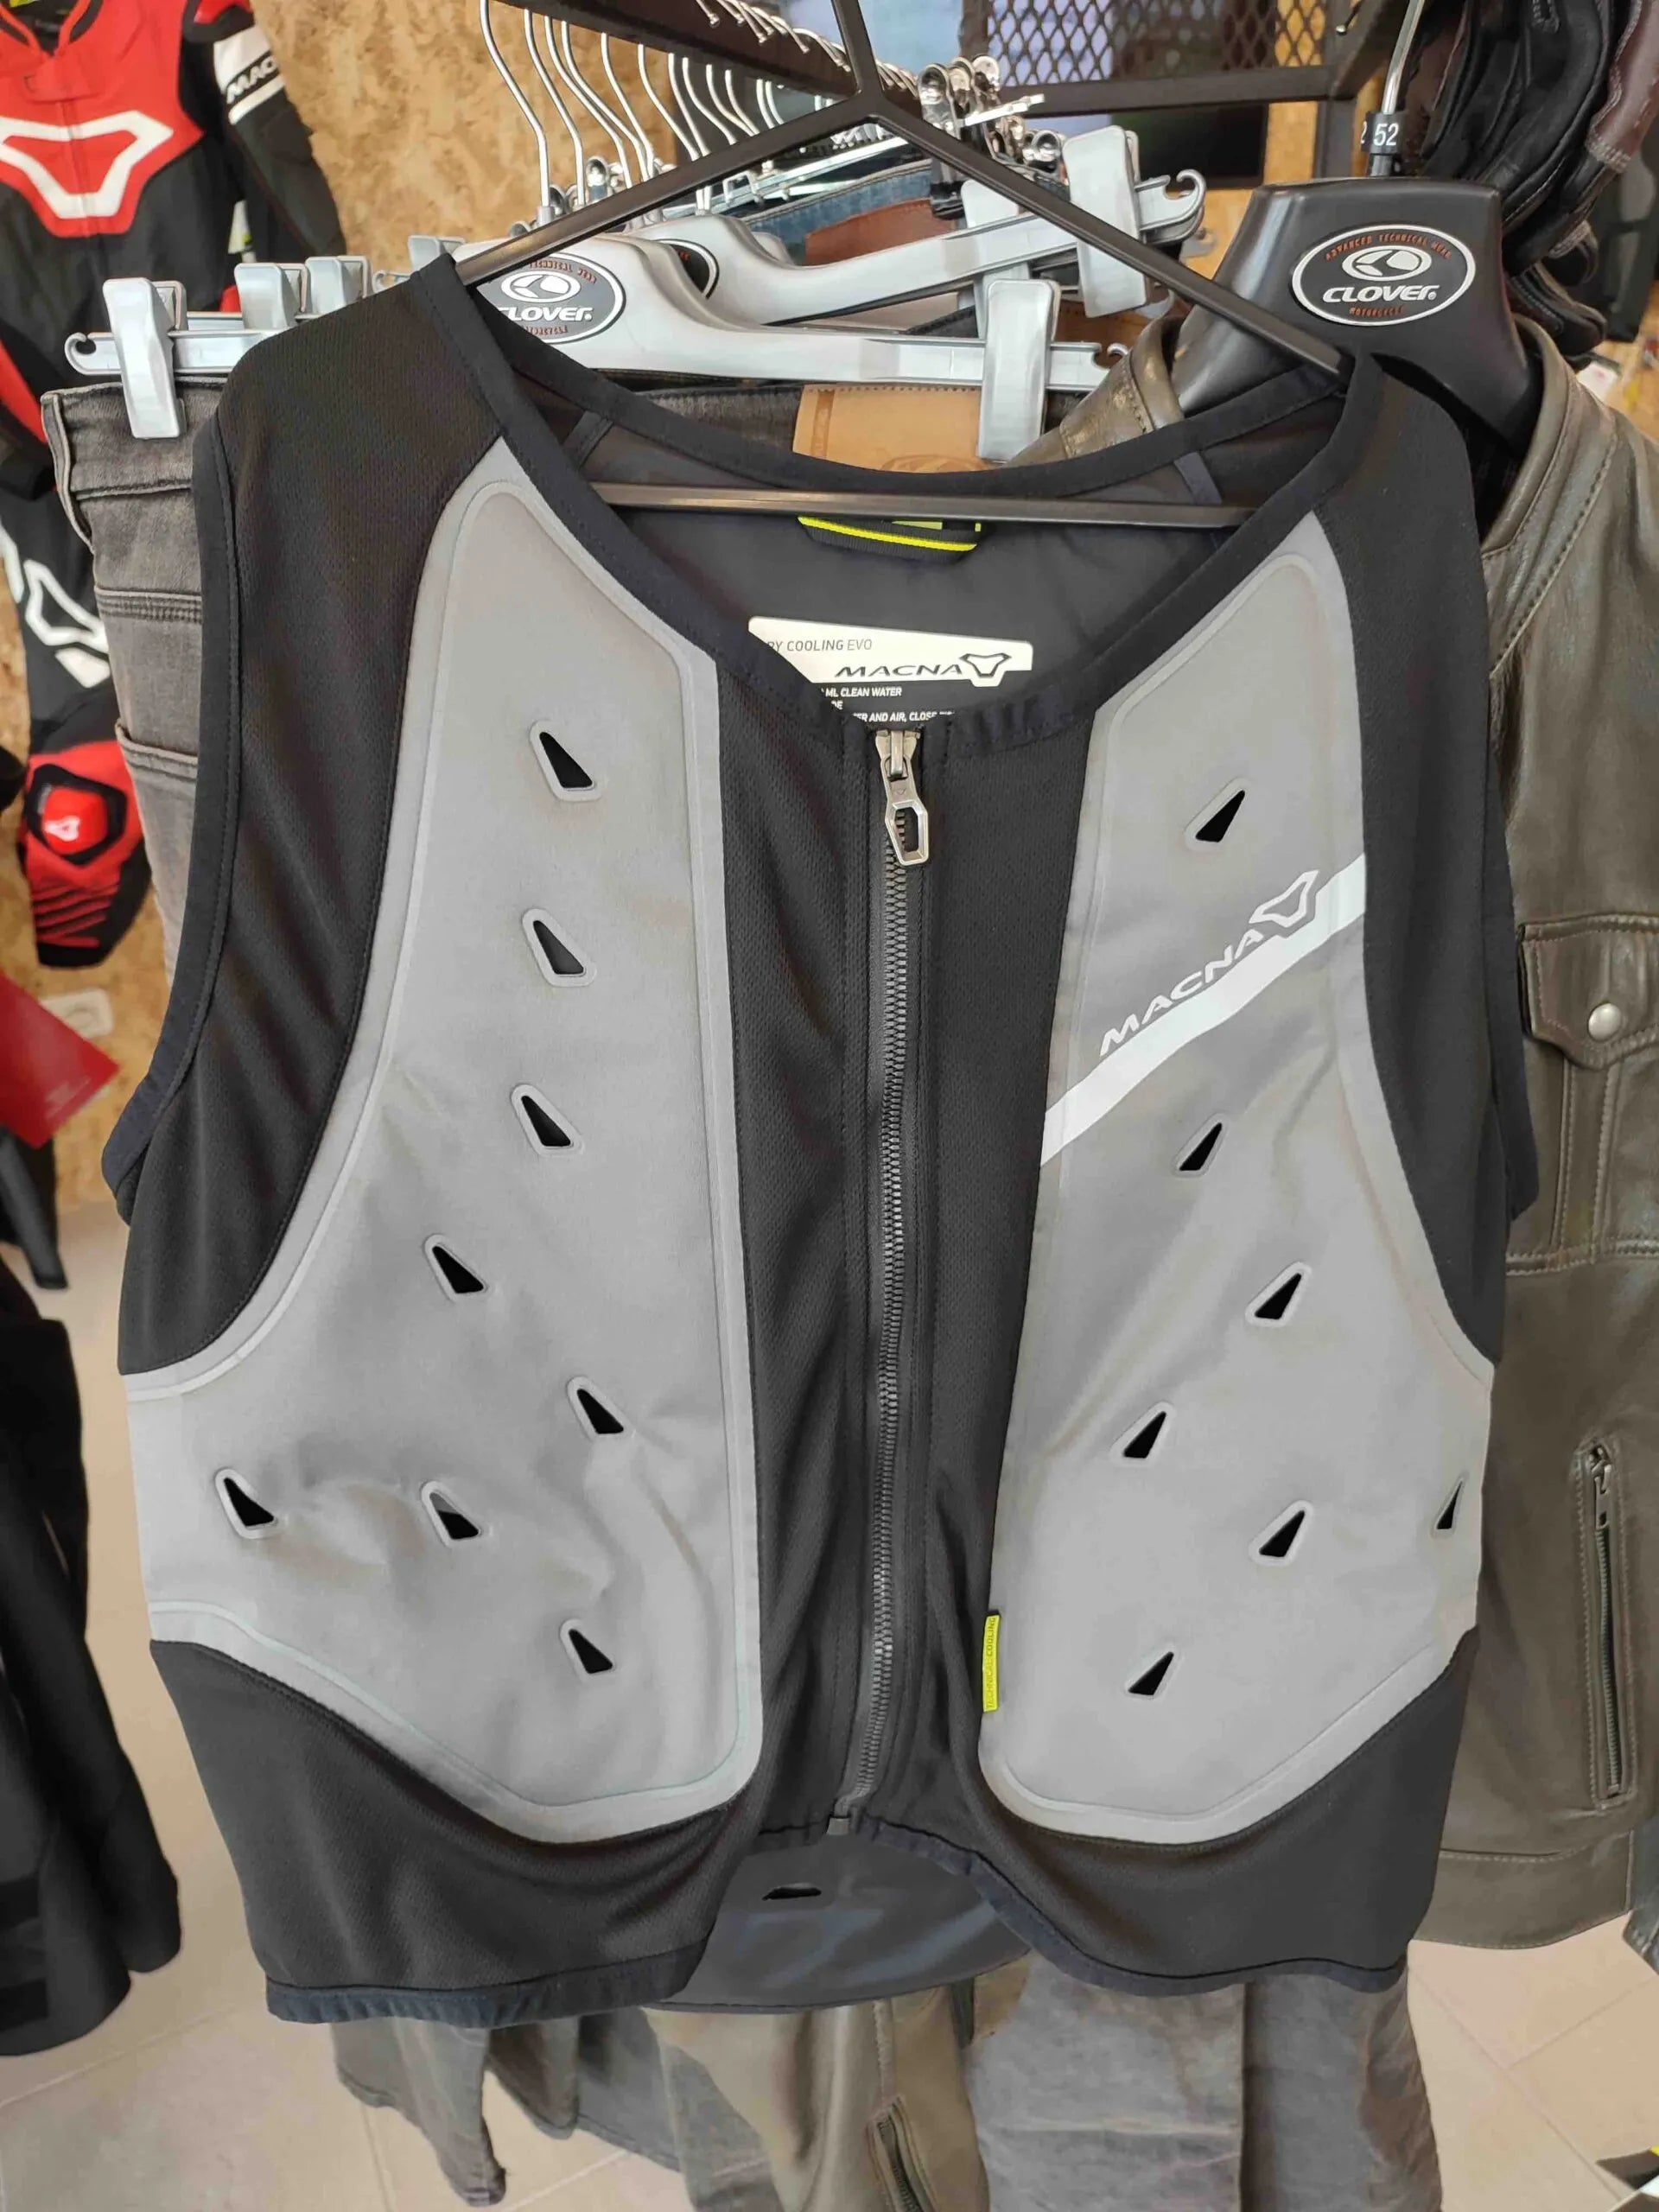 Gilet refrigerante Macna Cooling Vest Evo – Moto Adventure